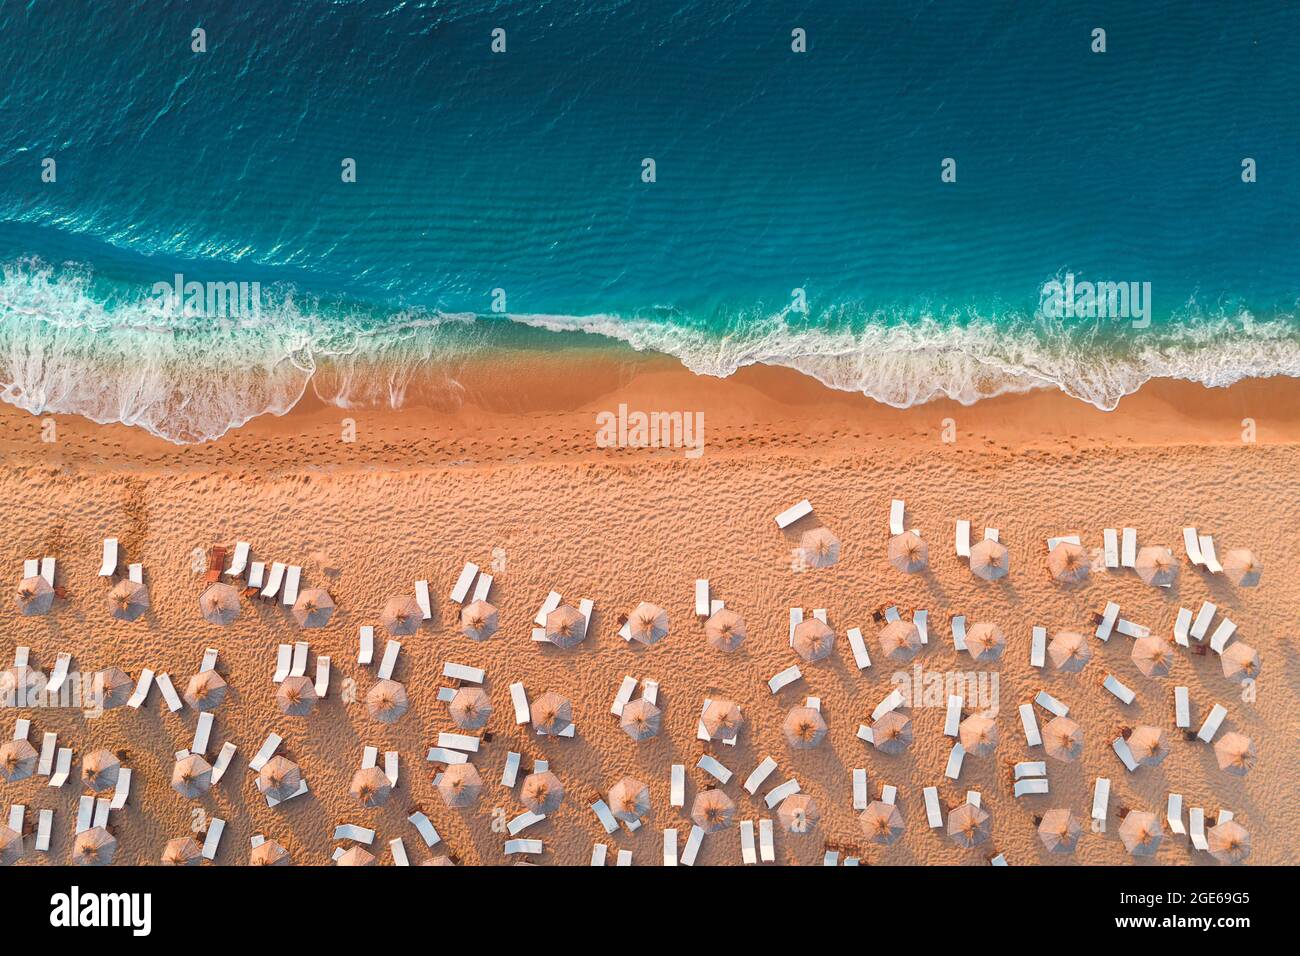 Vue de dessus de l'antenne de drone de plage de sable fin avec une mer turquoise des vagues avec copie espace pour le texte. Banque D'Images